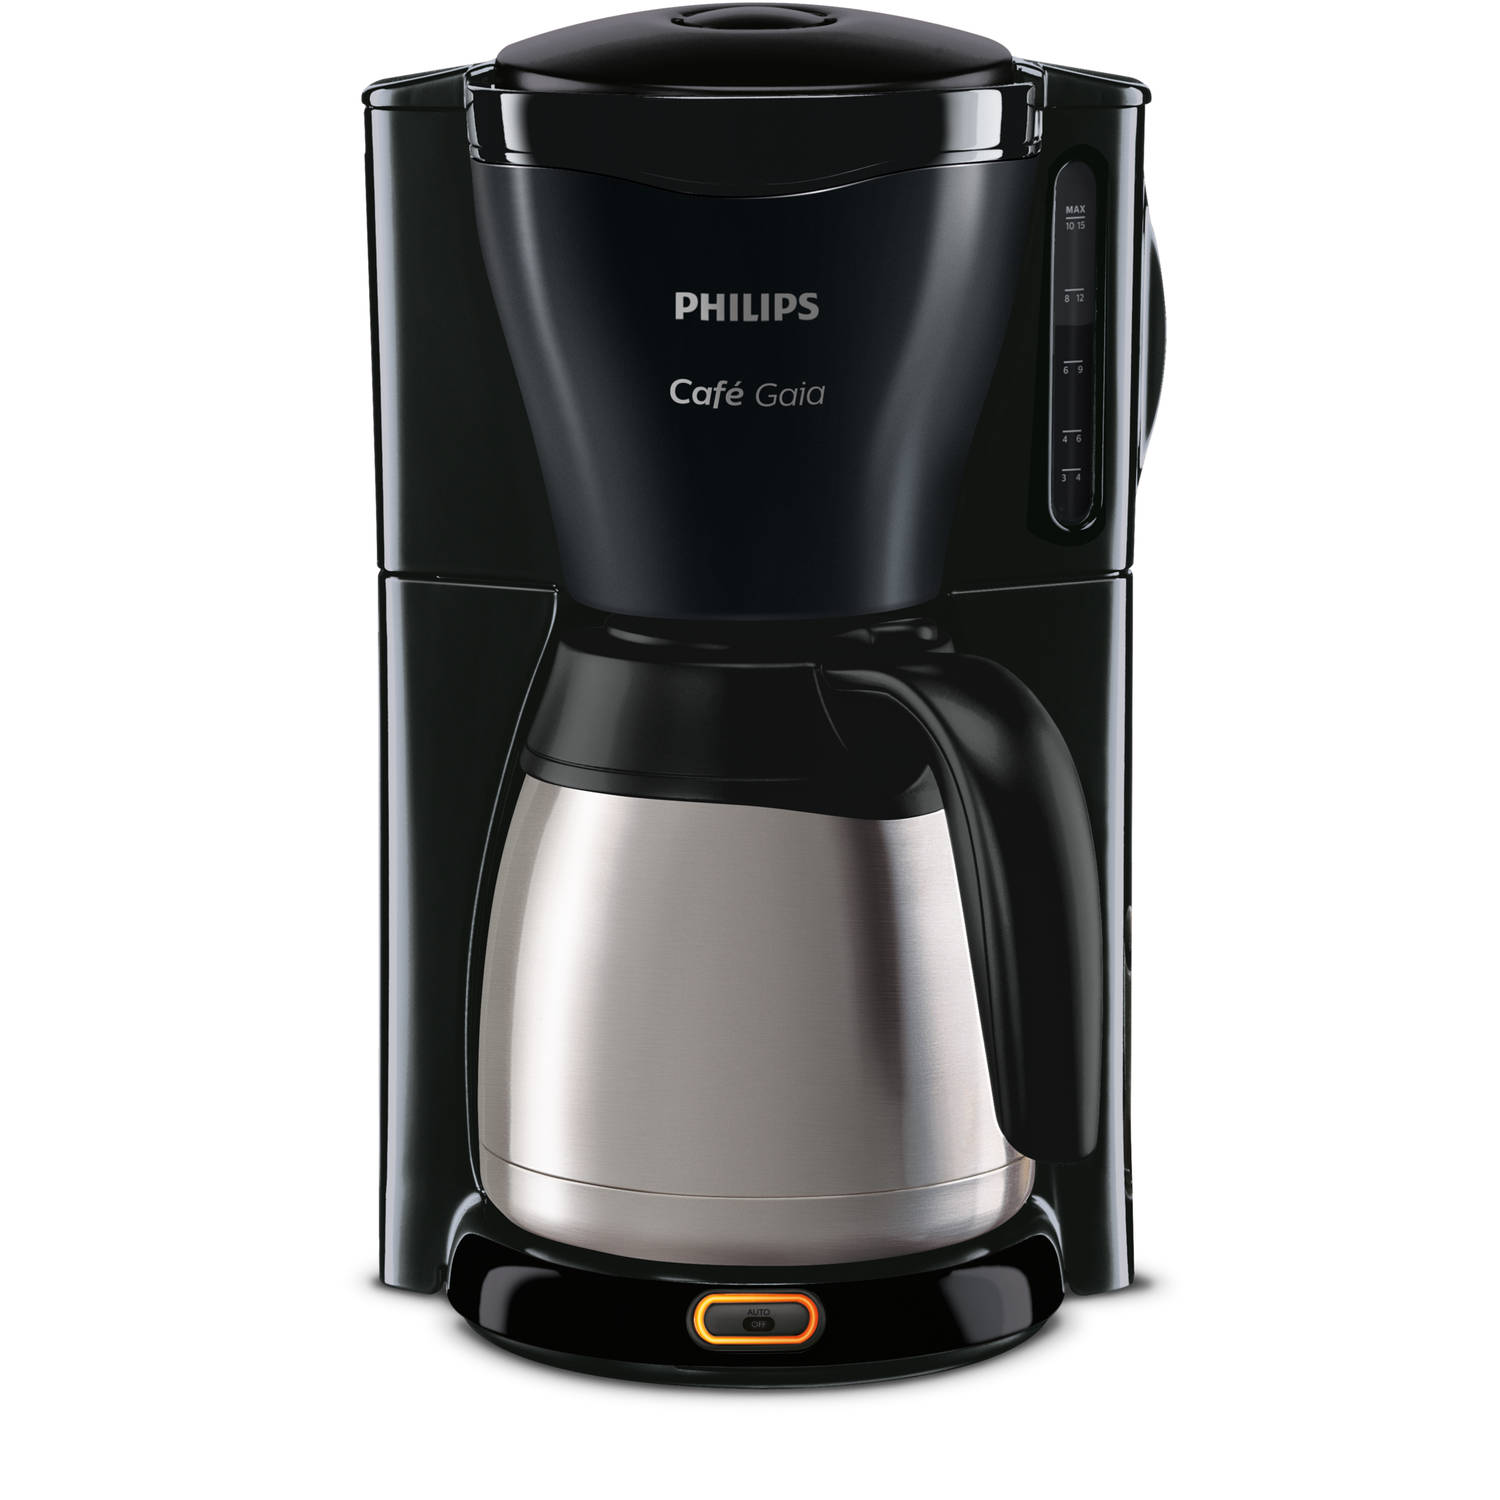 Peuter Ijzig inrichting Philips filterkoffiezetapparaat Café Gaia HD7549/20 - zwart | Blokker